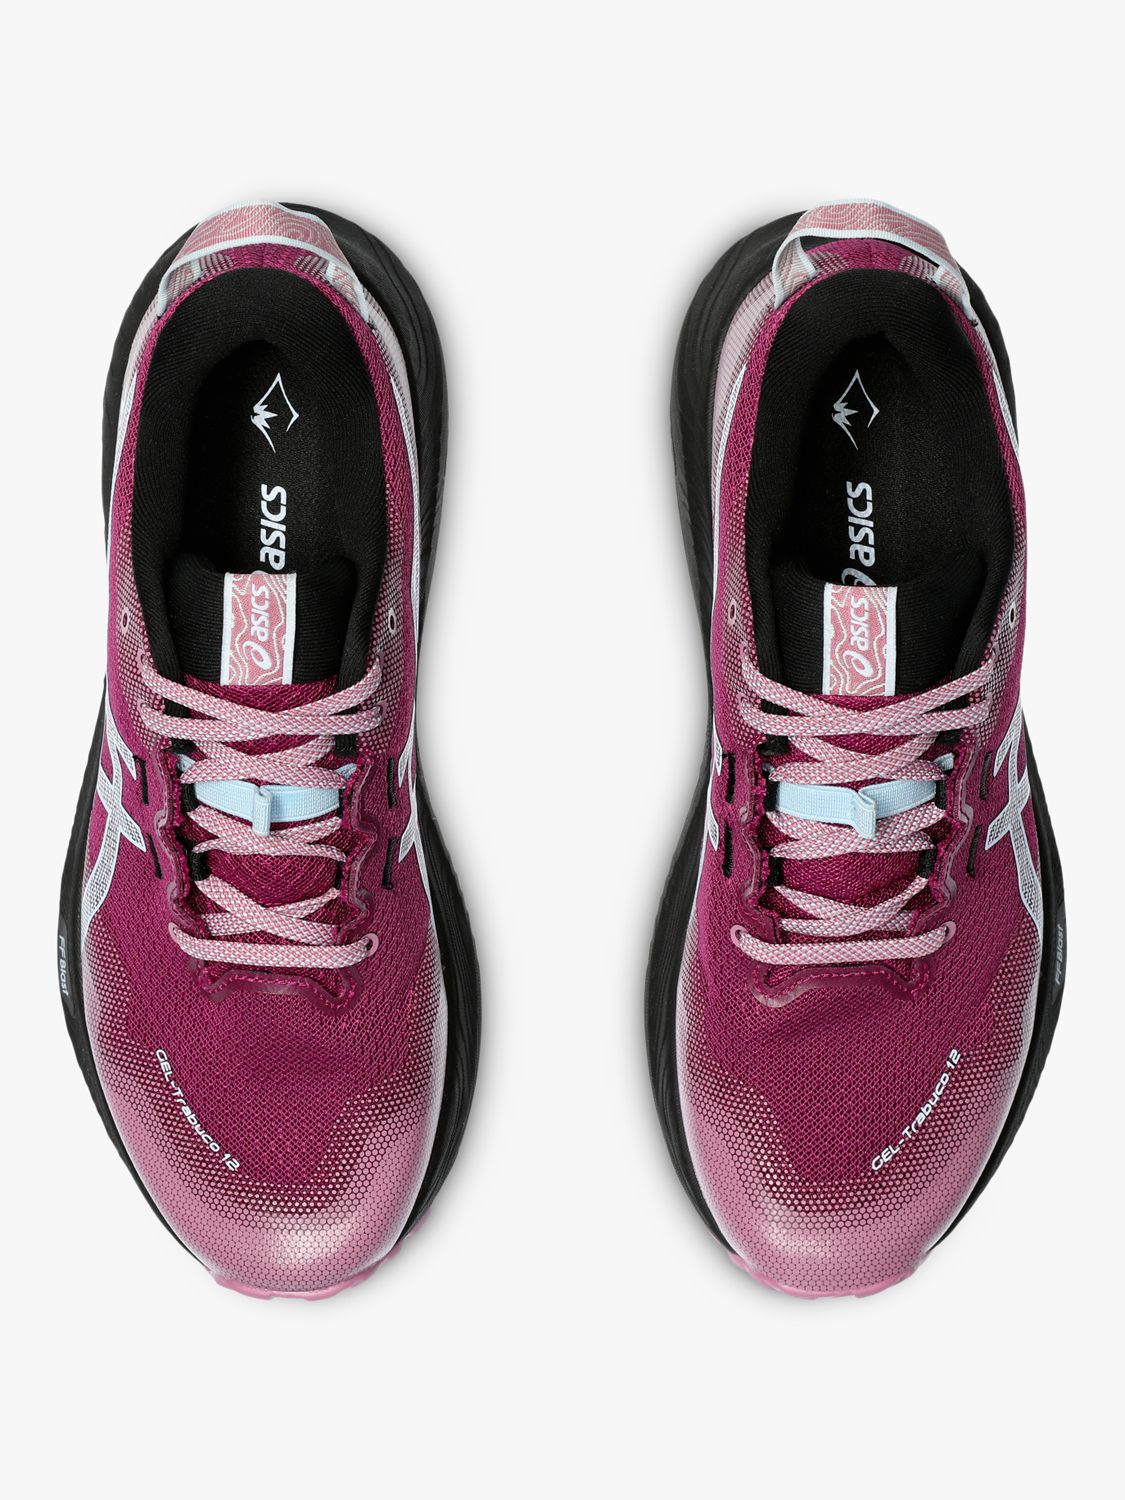 ASICS GEL-TRABUCO 12 Women's Running Shoes, Blackberry/Blue, 4.5